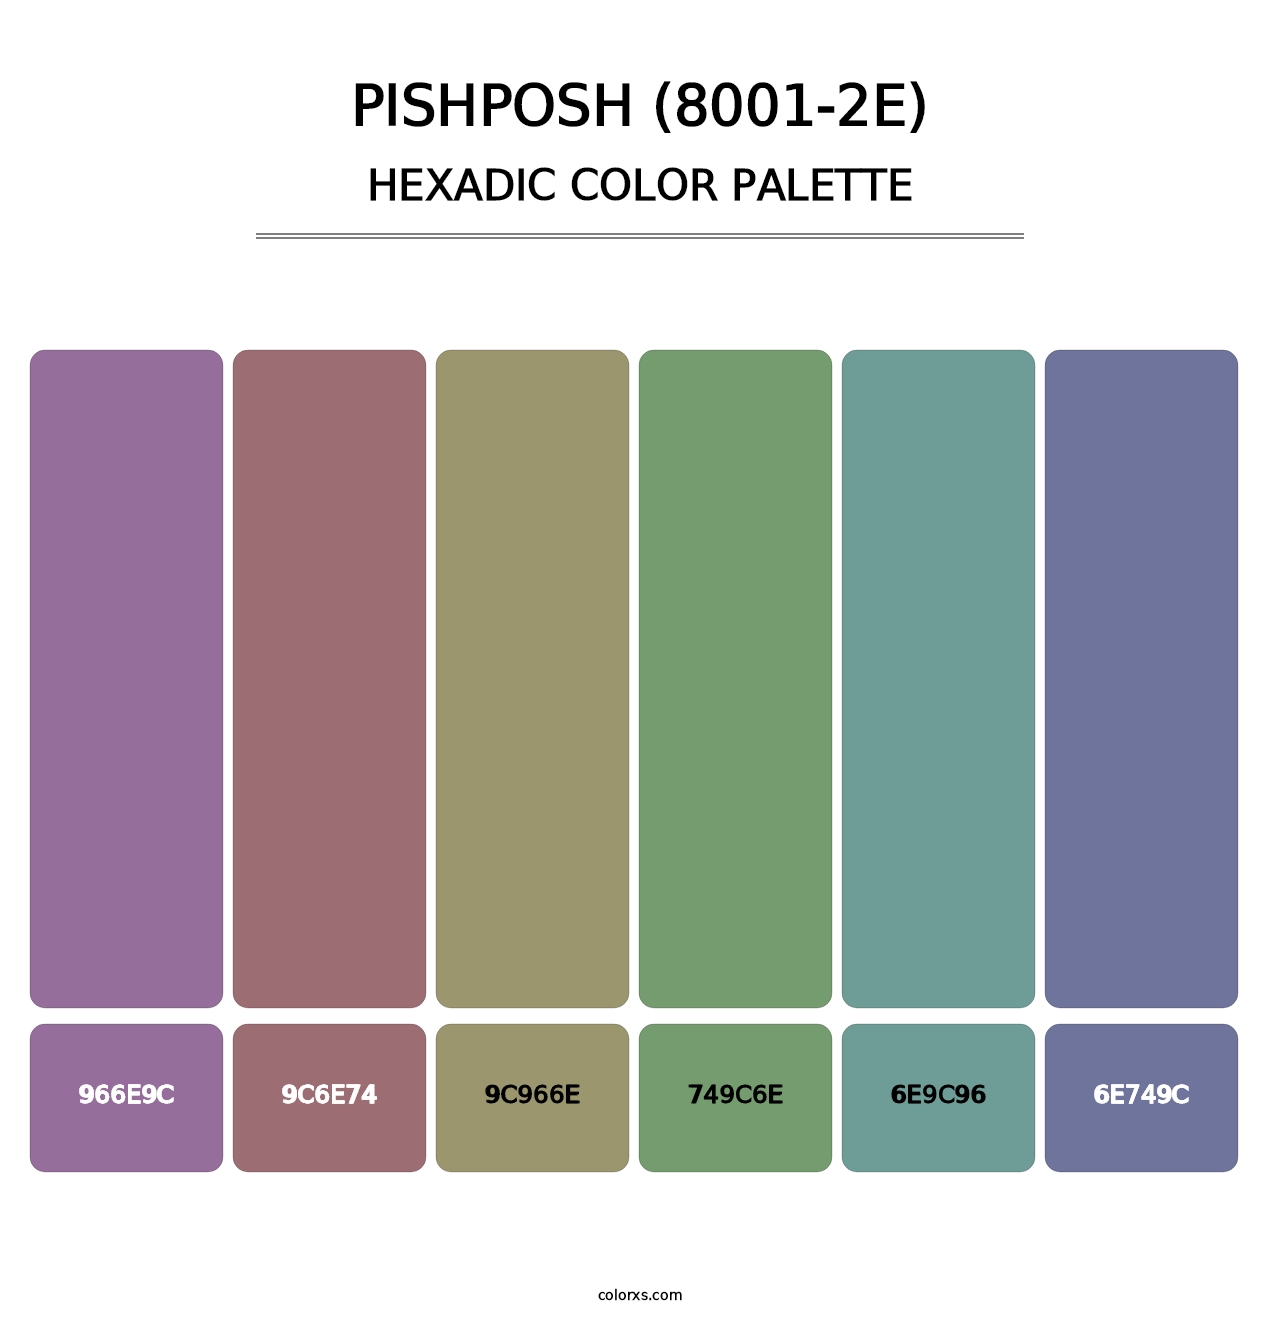 Pishposh (8001-2E) - Hexadic Color Palette